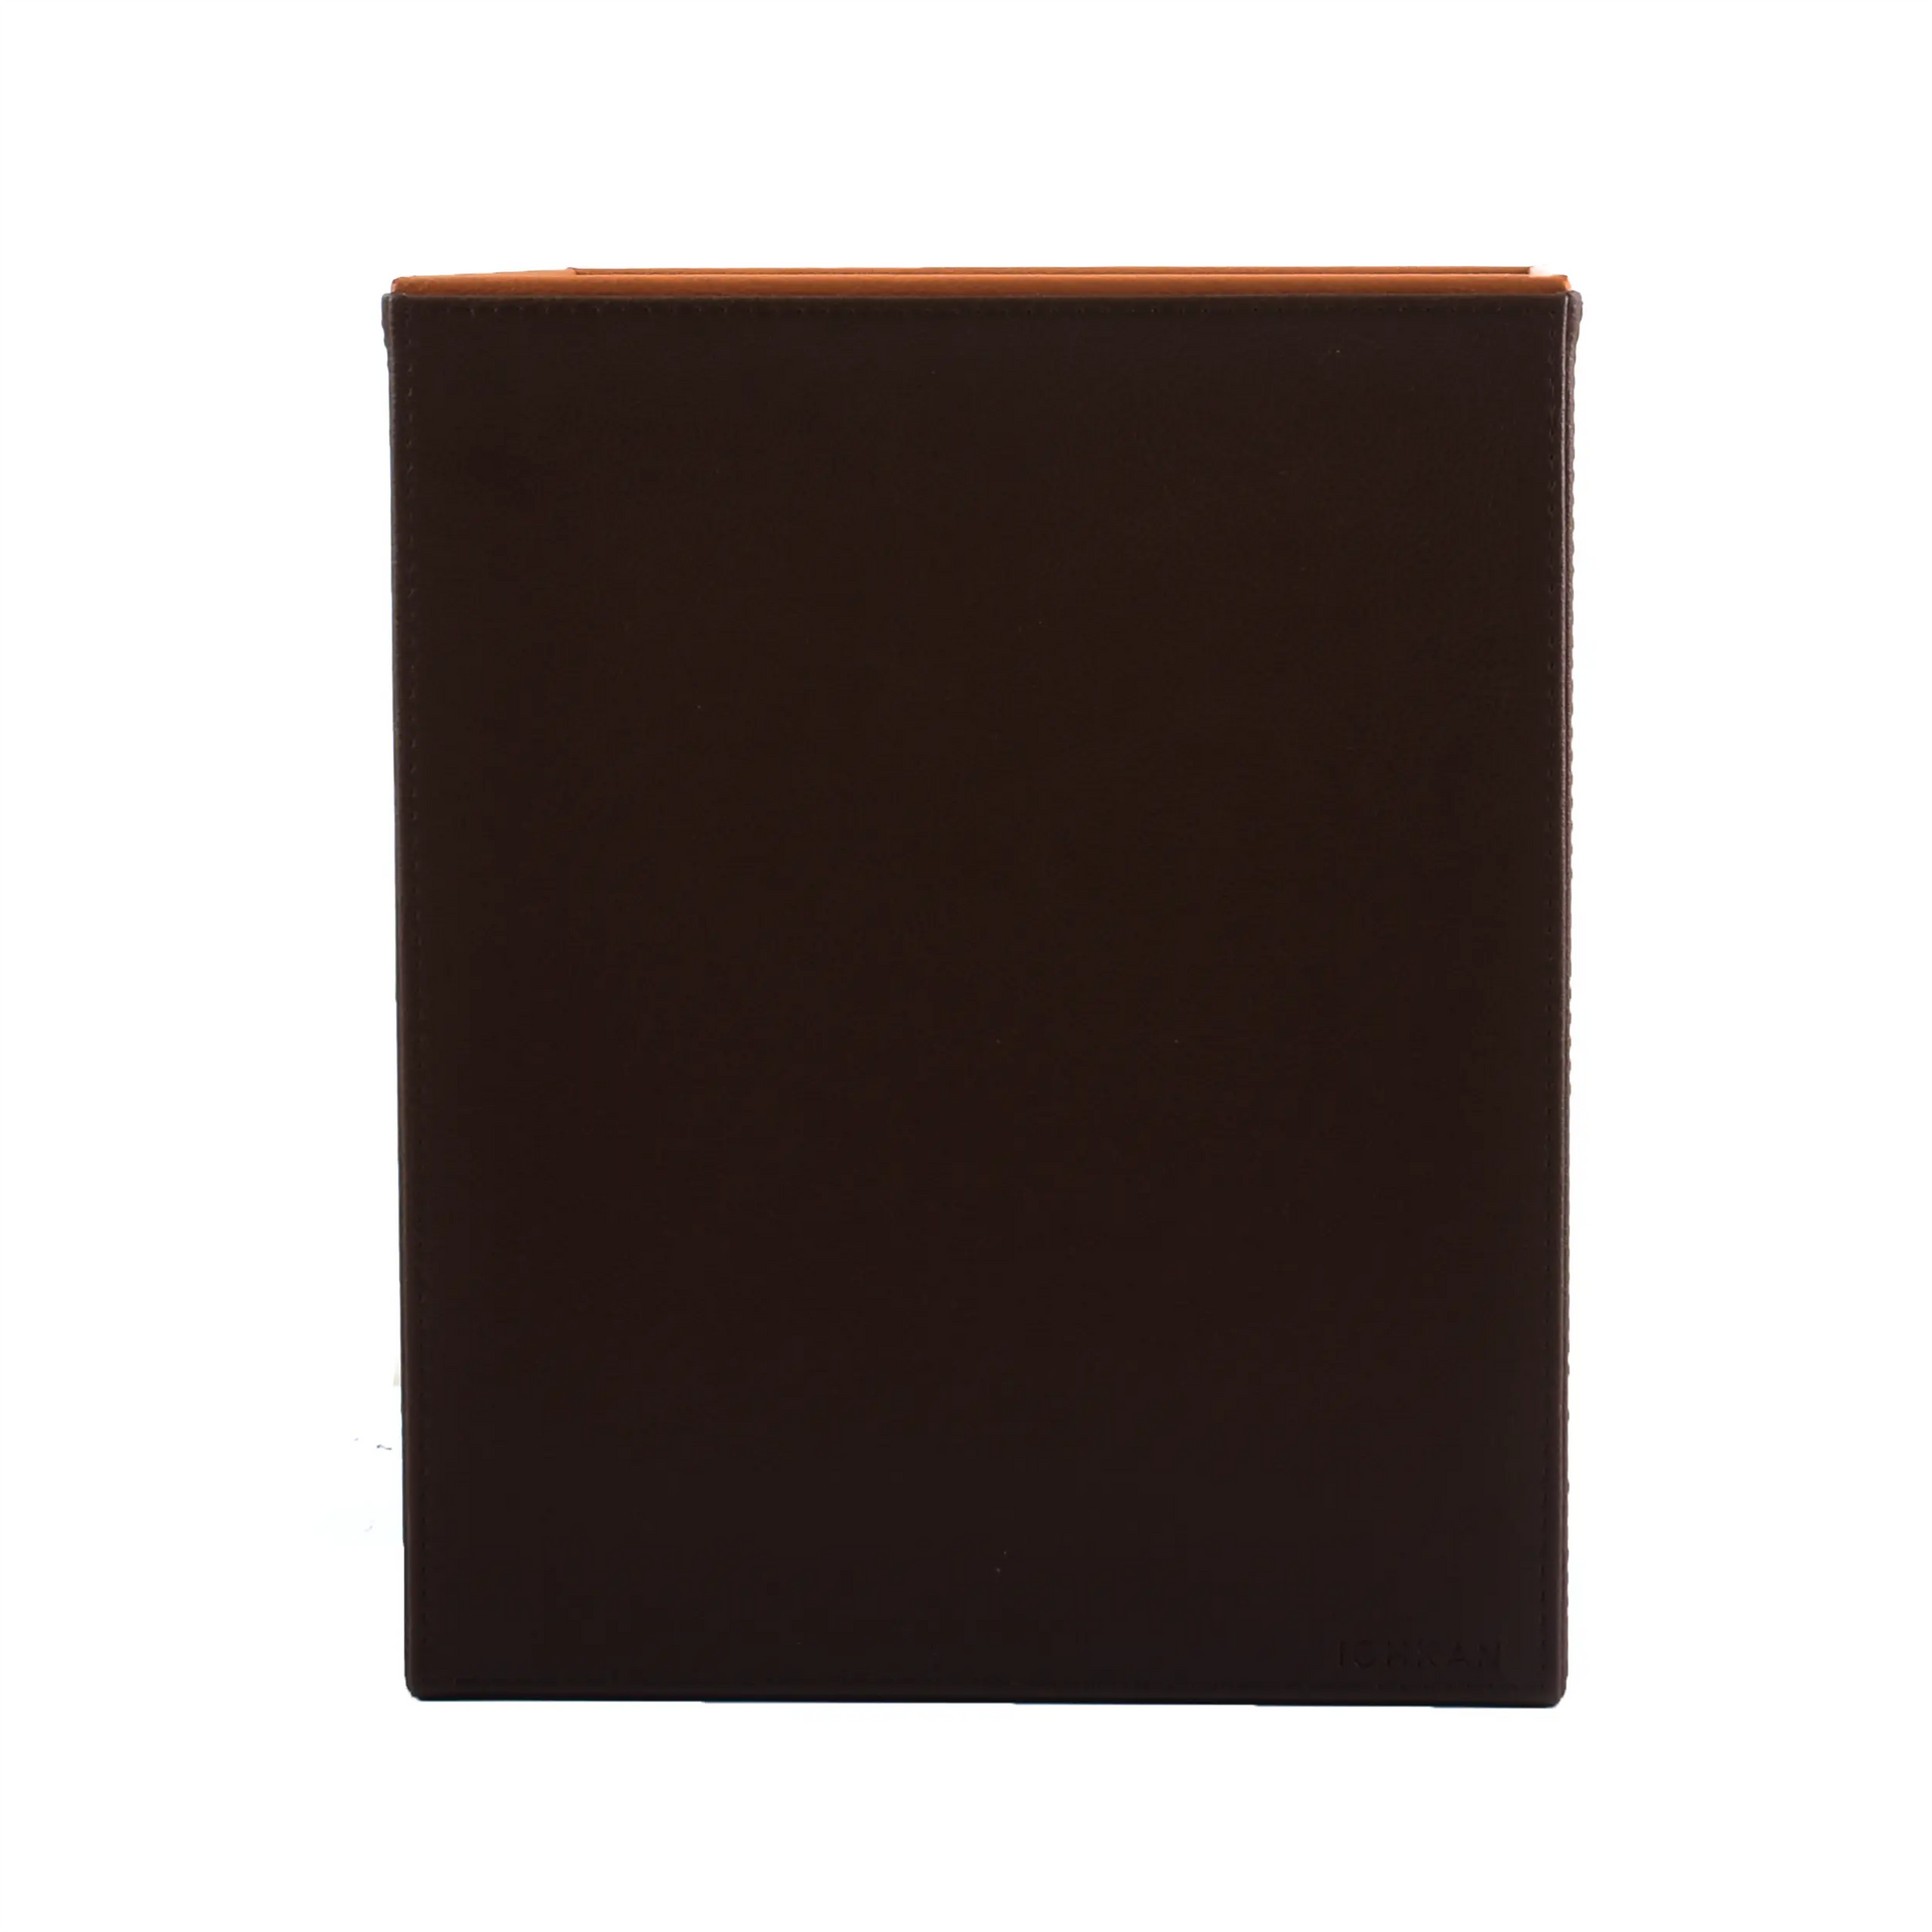 Leatherette Waste Bin | Dark Brown | Axis 2.0 ICHKAN